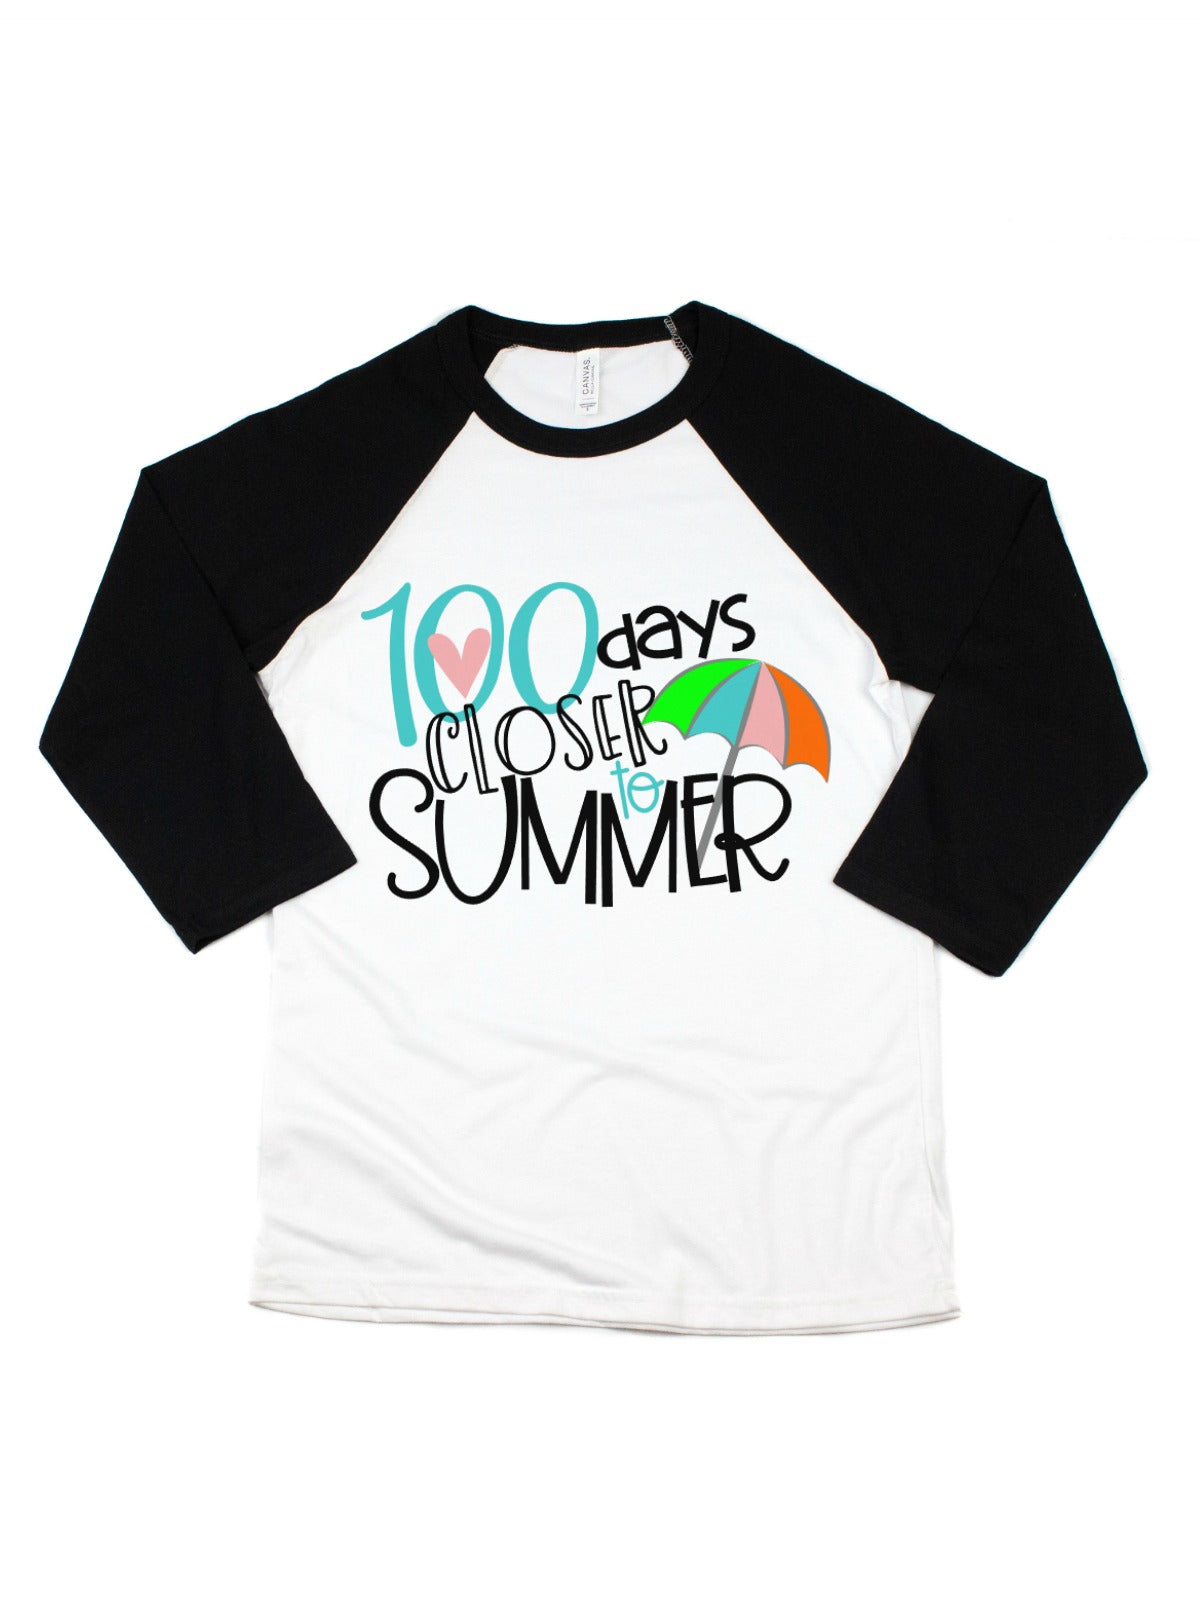 100 days closer to summer raglan shirt 